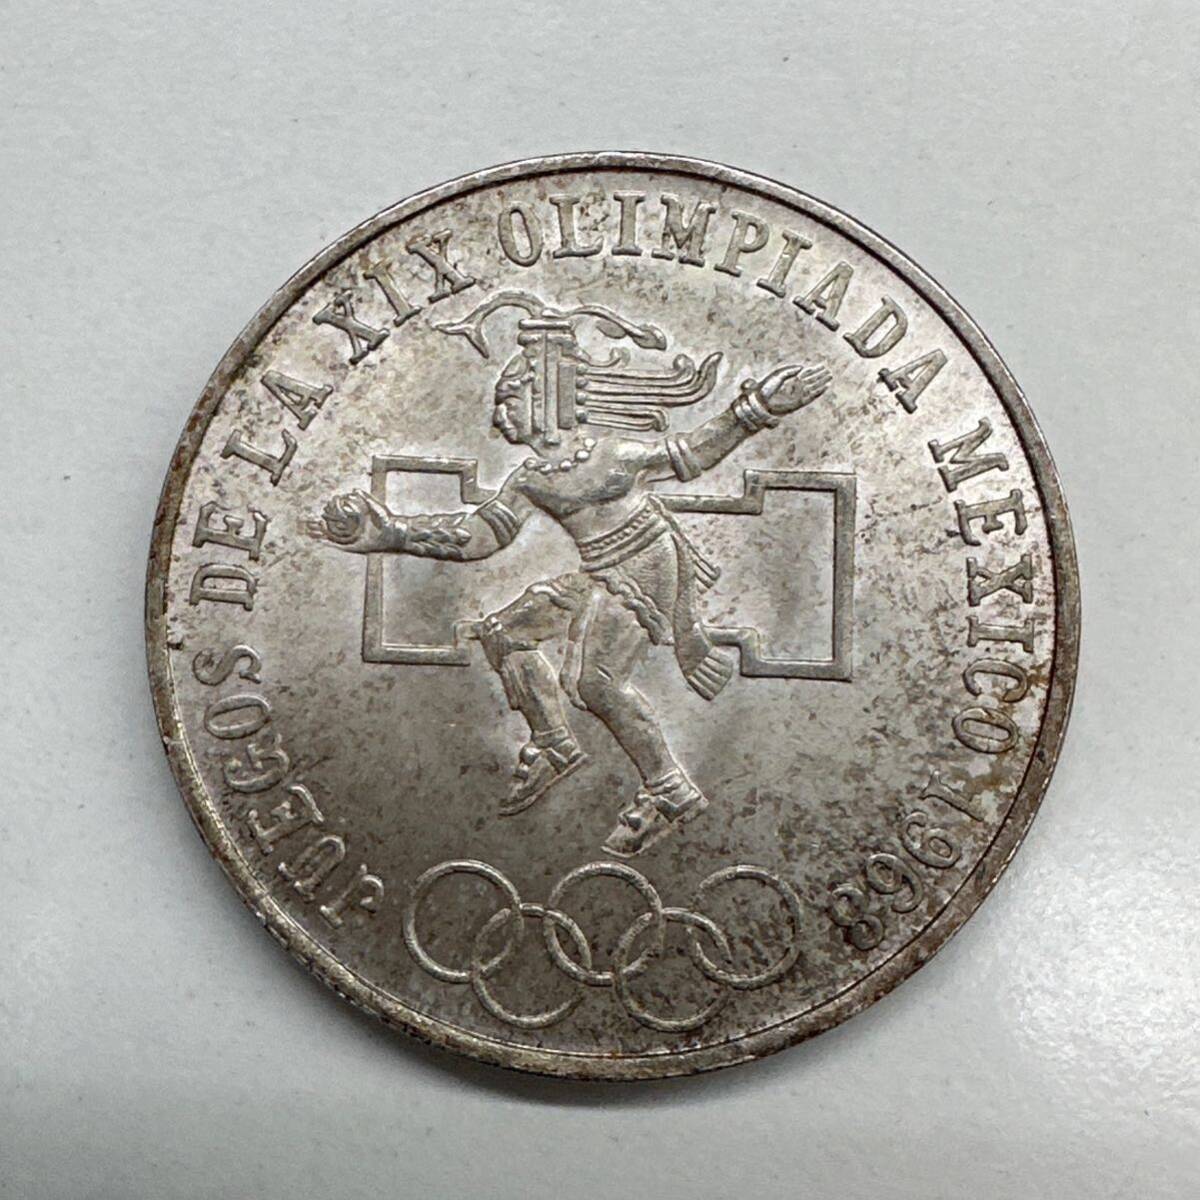 【TS0319】1968年 メキシコオリンピック 25ペソ銀貨 硬貨 コイン 通貨 貨幣 レトロ アンティーク コレクションの画像1